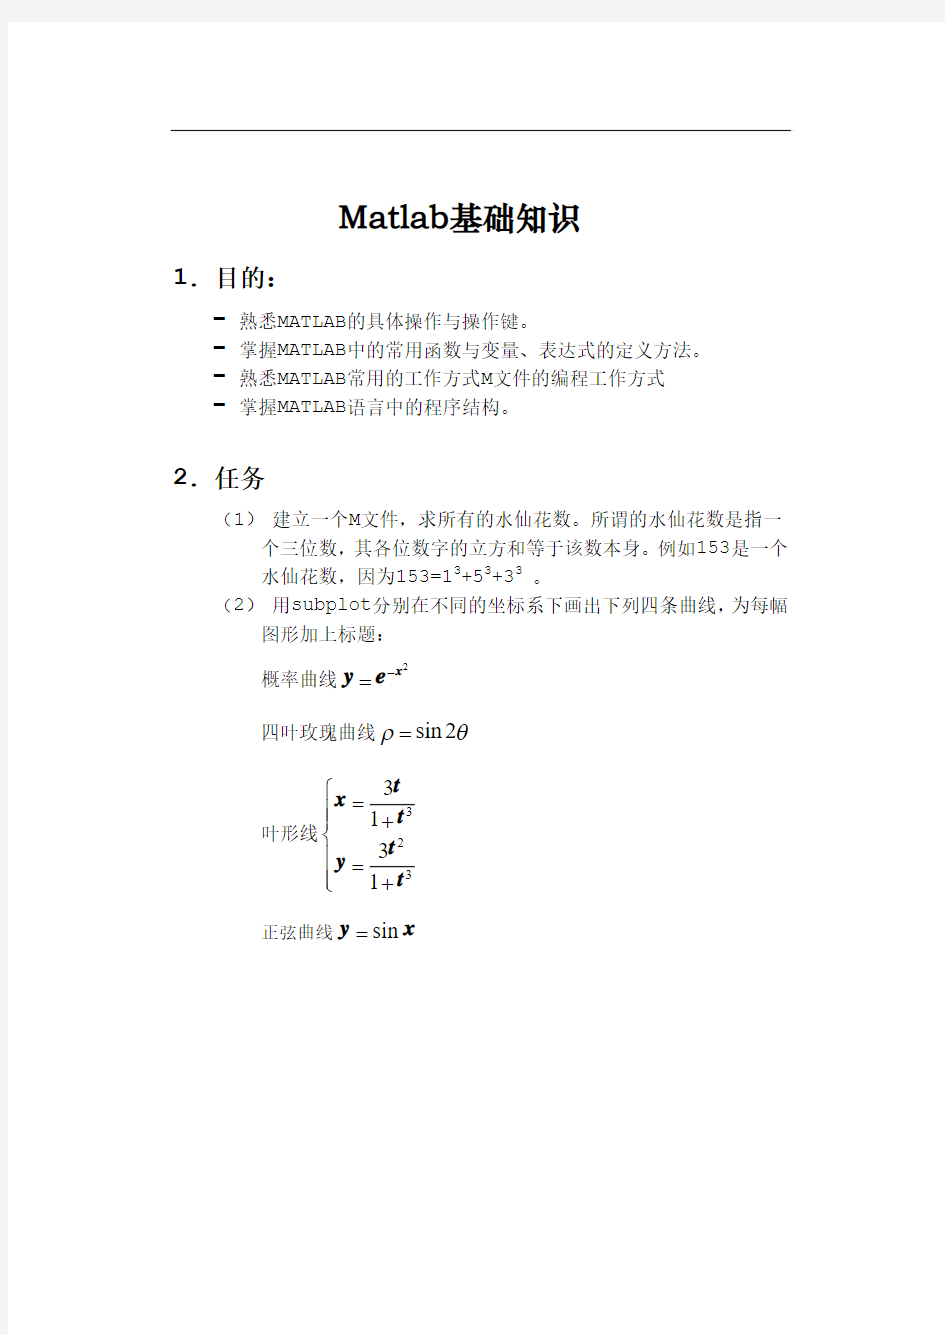 华工数学实验-作业1-Matlab基础知识